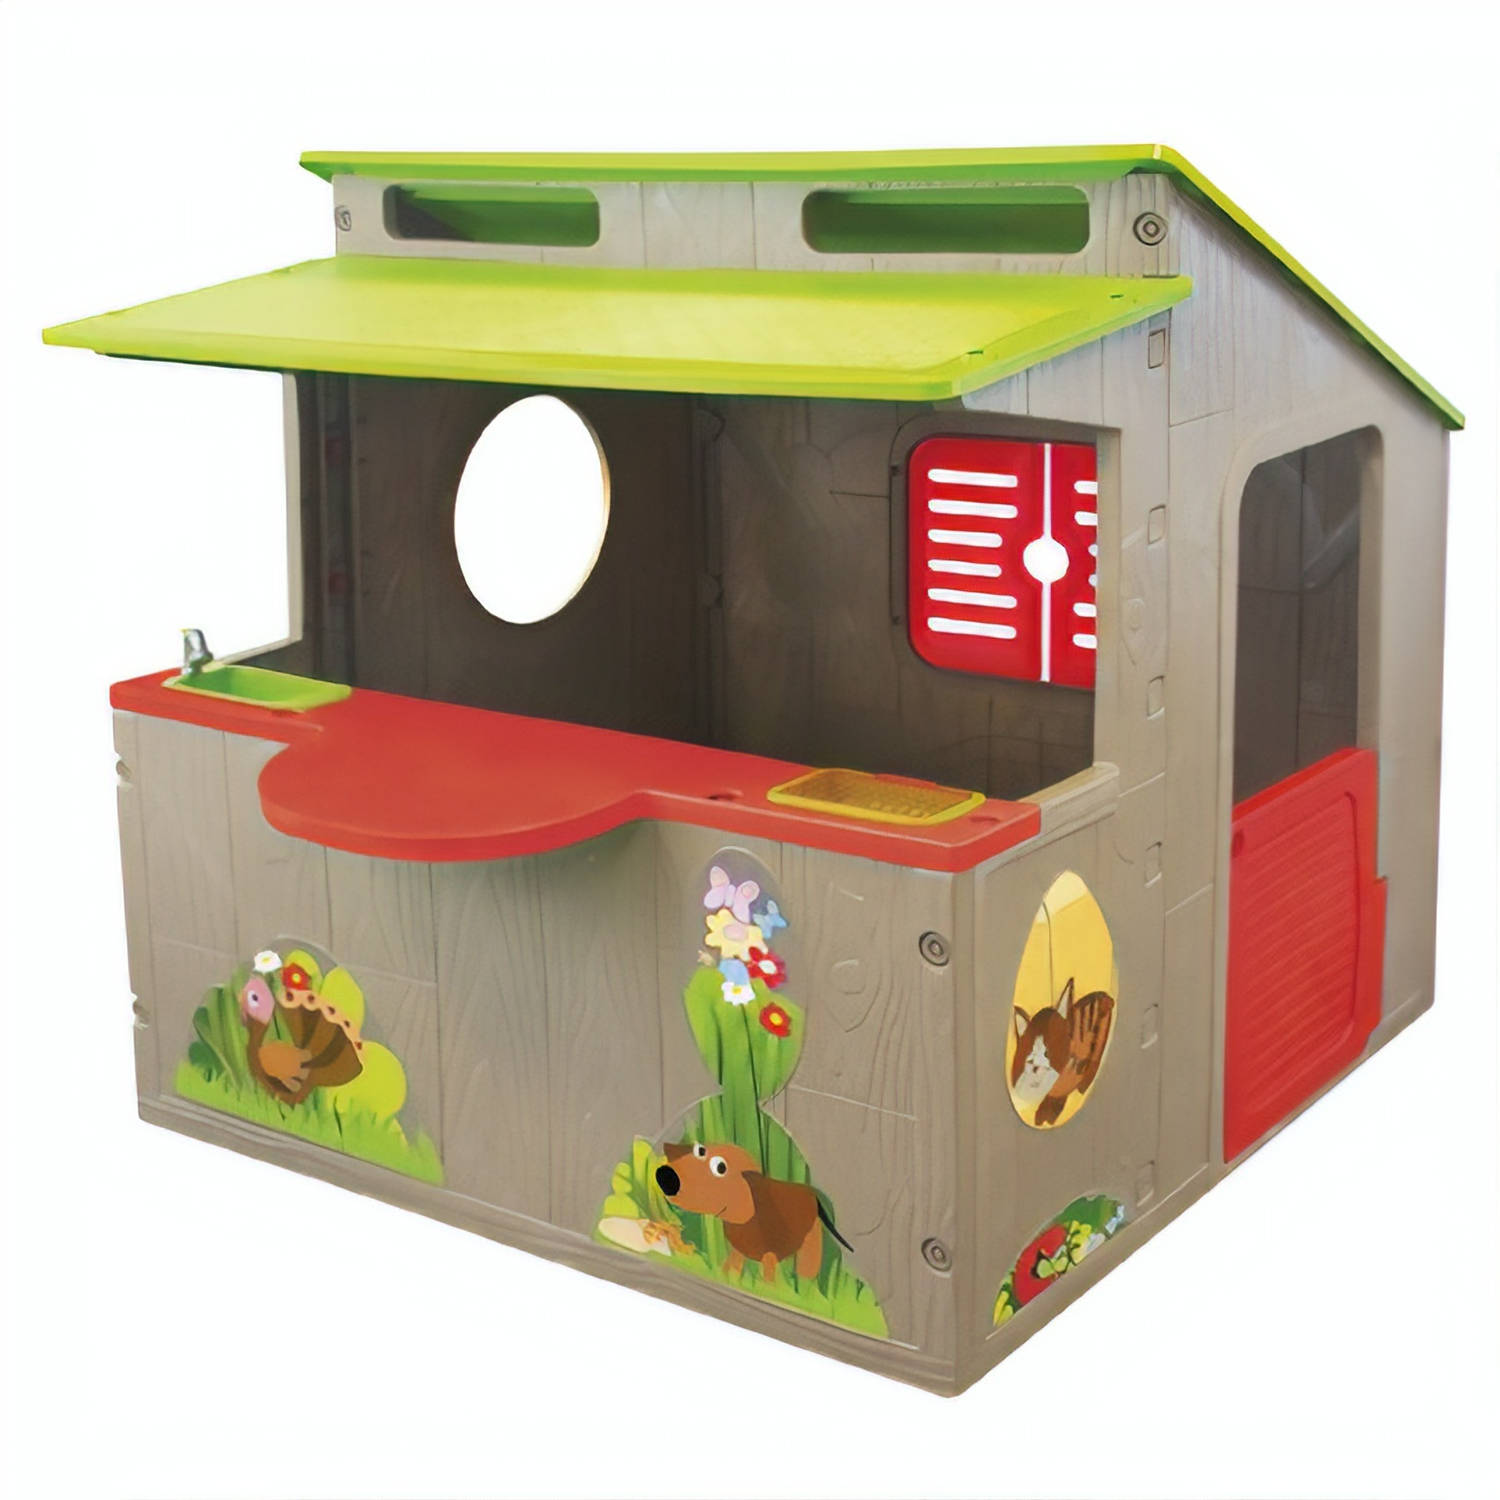 Paradiso Toys speelhuis Kiosk 139 x 118 cm bruin-groen-rood